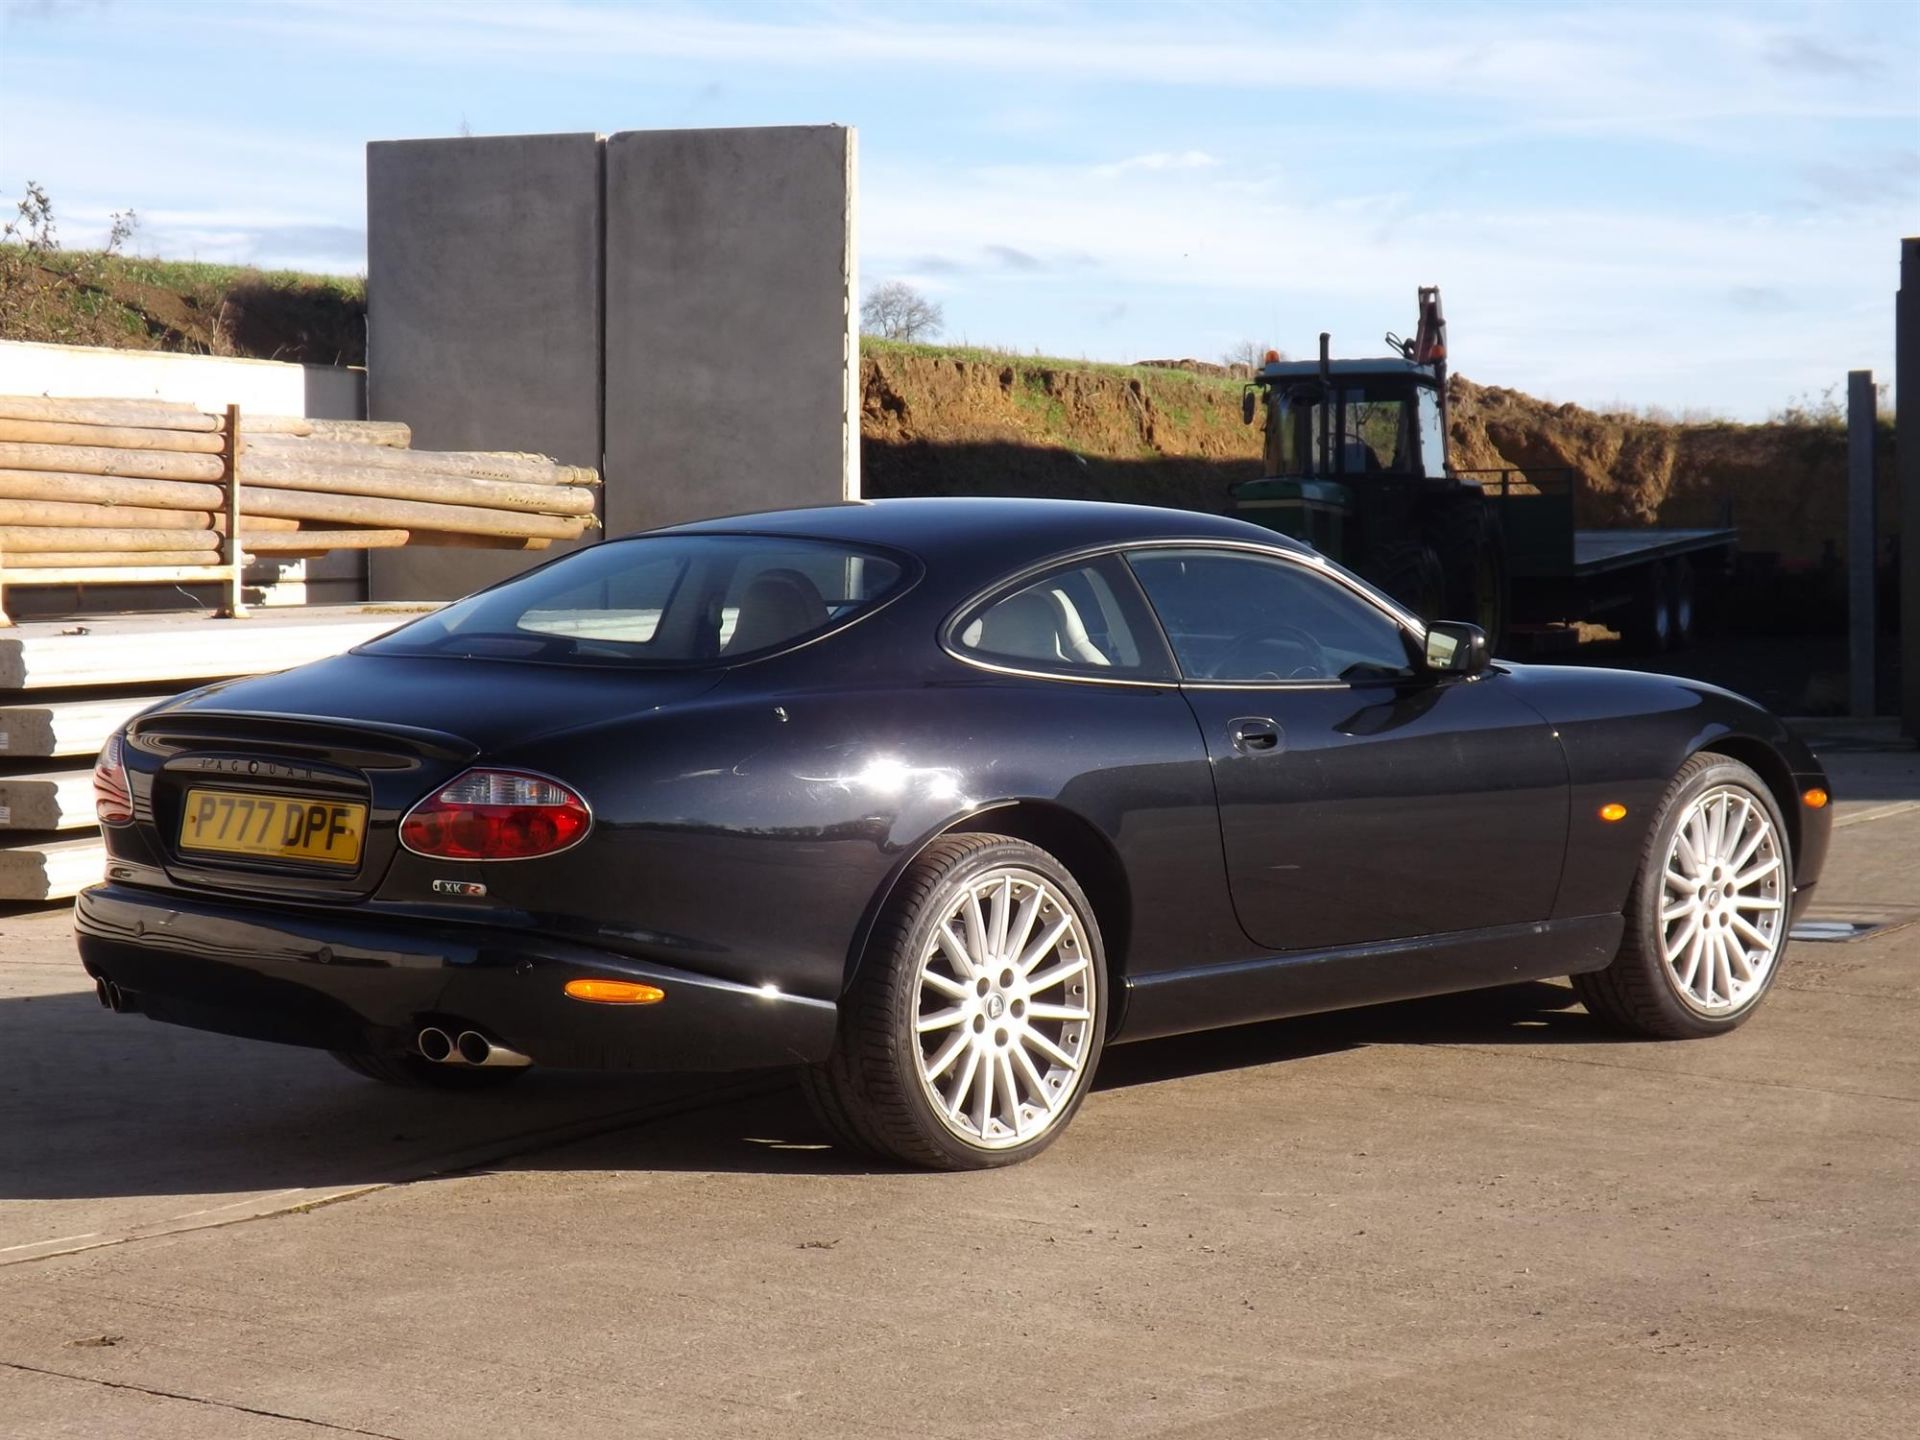 2005 Jaguar XKR (X100) - Image 7 of 10